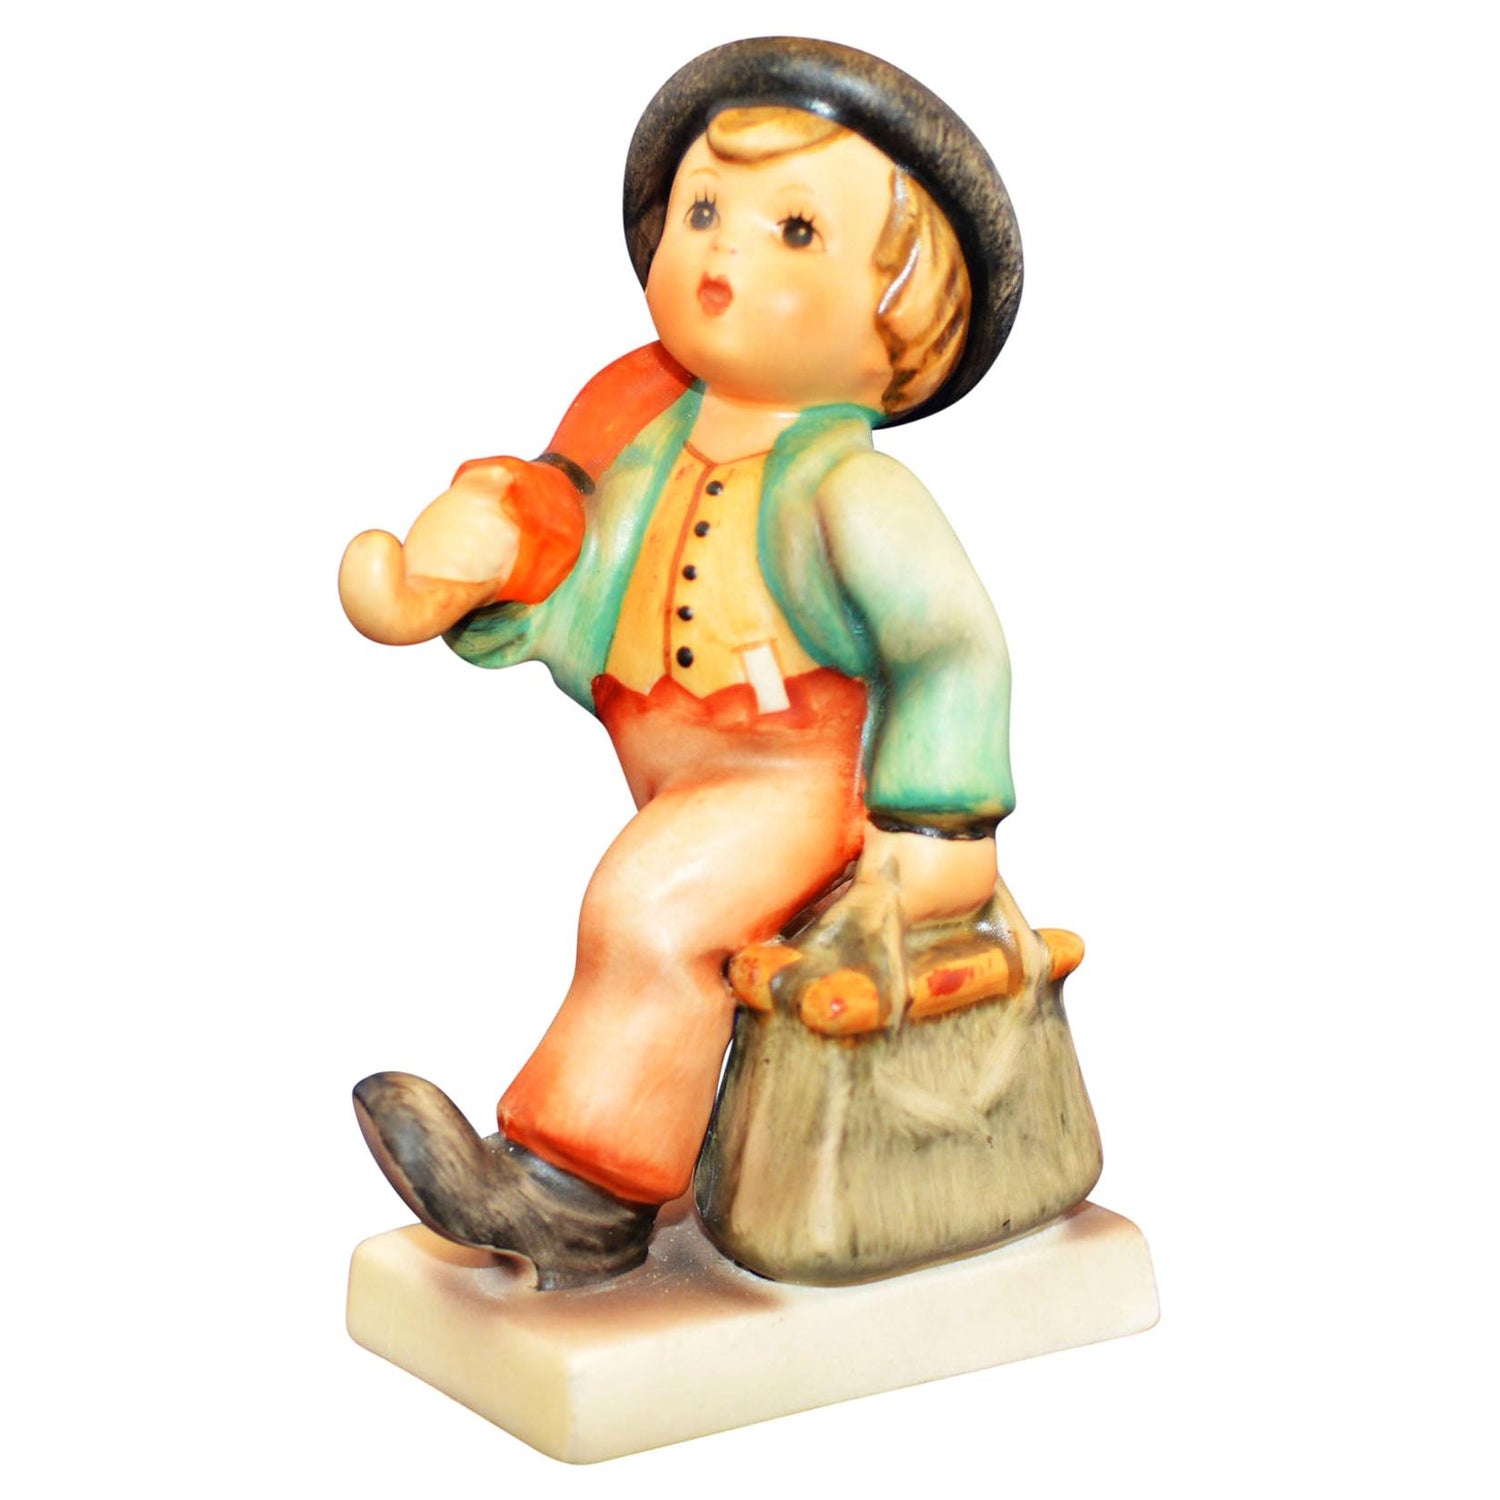 Hummel Figurines - 6 For Sale 1stDibs | vintage hummel dolls, hummel collection, german hummel